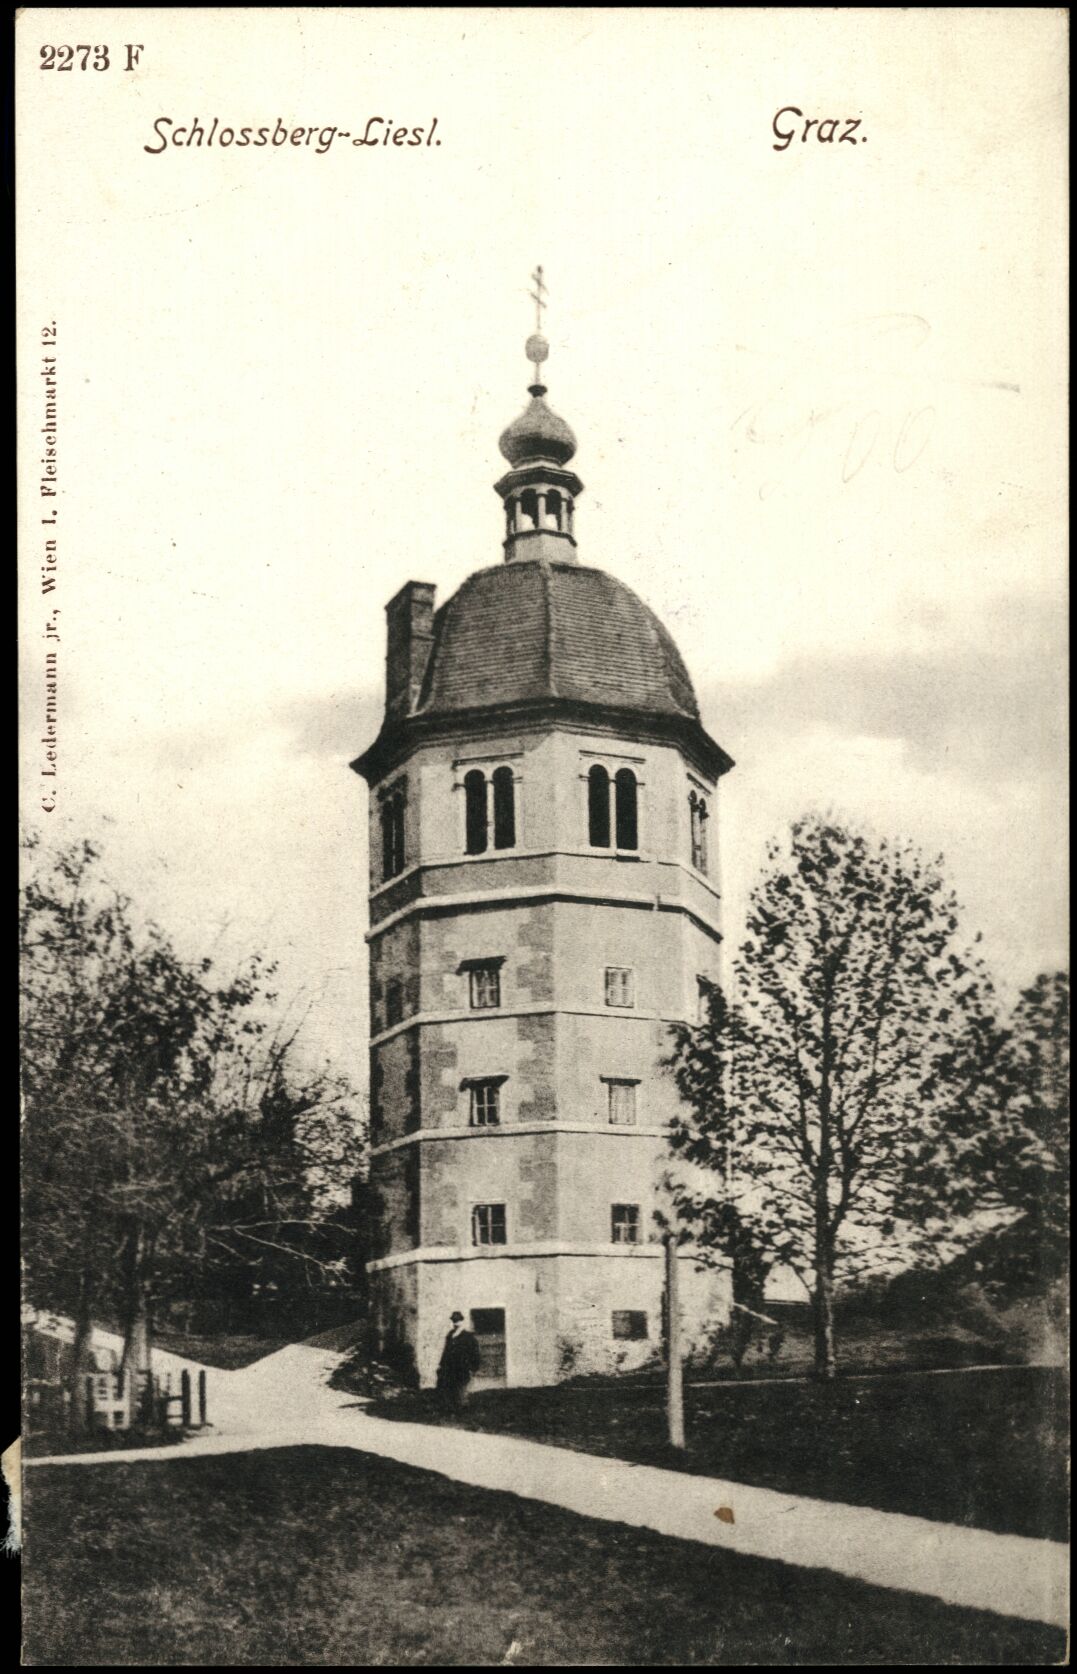 Graz, Schlossber-Liesl; vor 1905; Österreichische Nationalbibliothek. Ansichtskarten online. httpdata.onb.ac.atAKONAK054_060